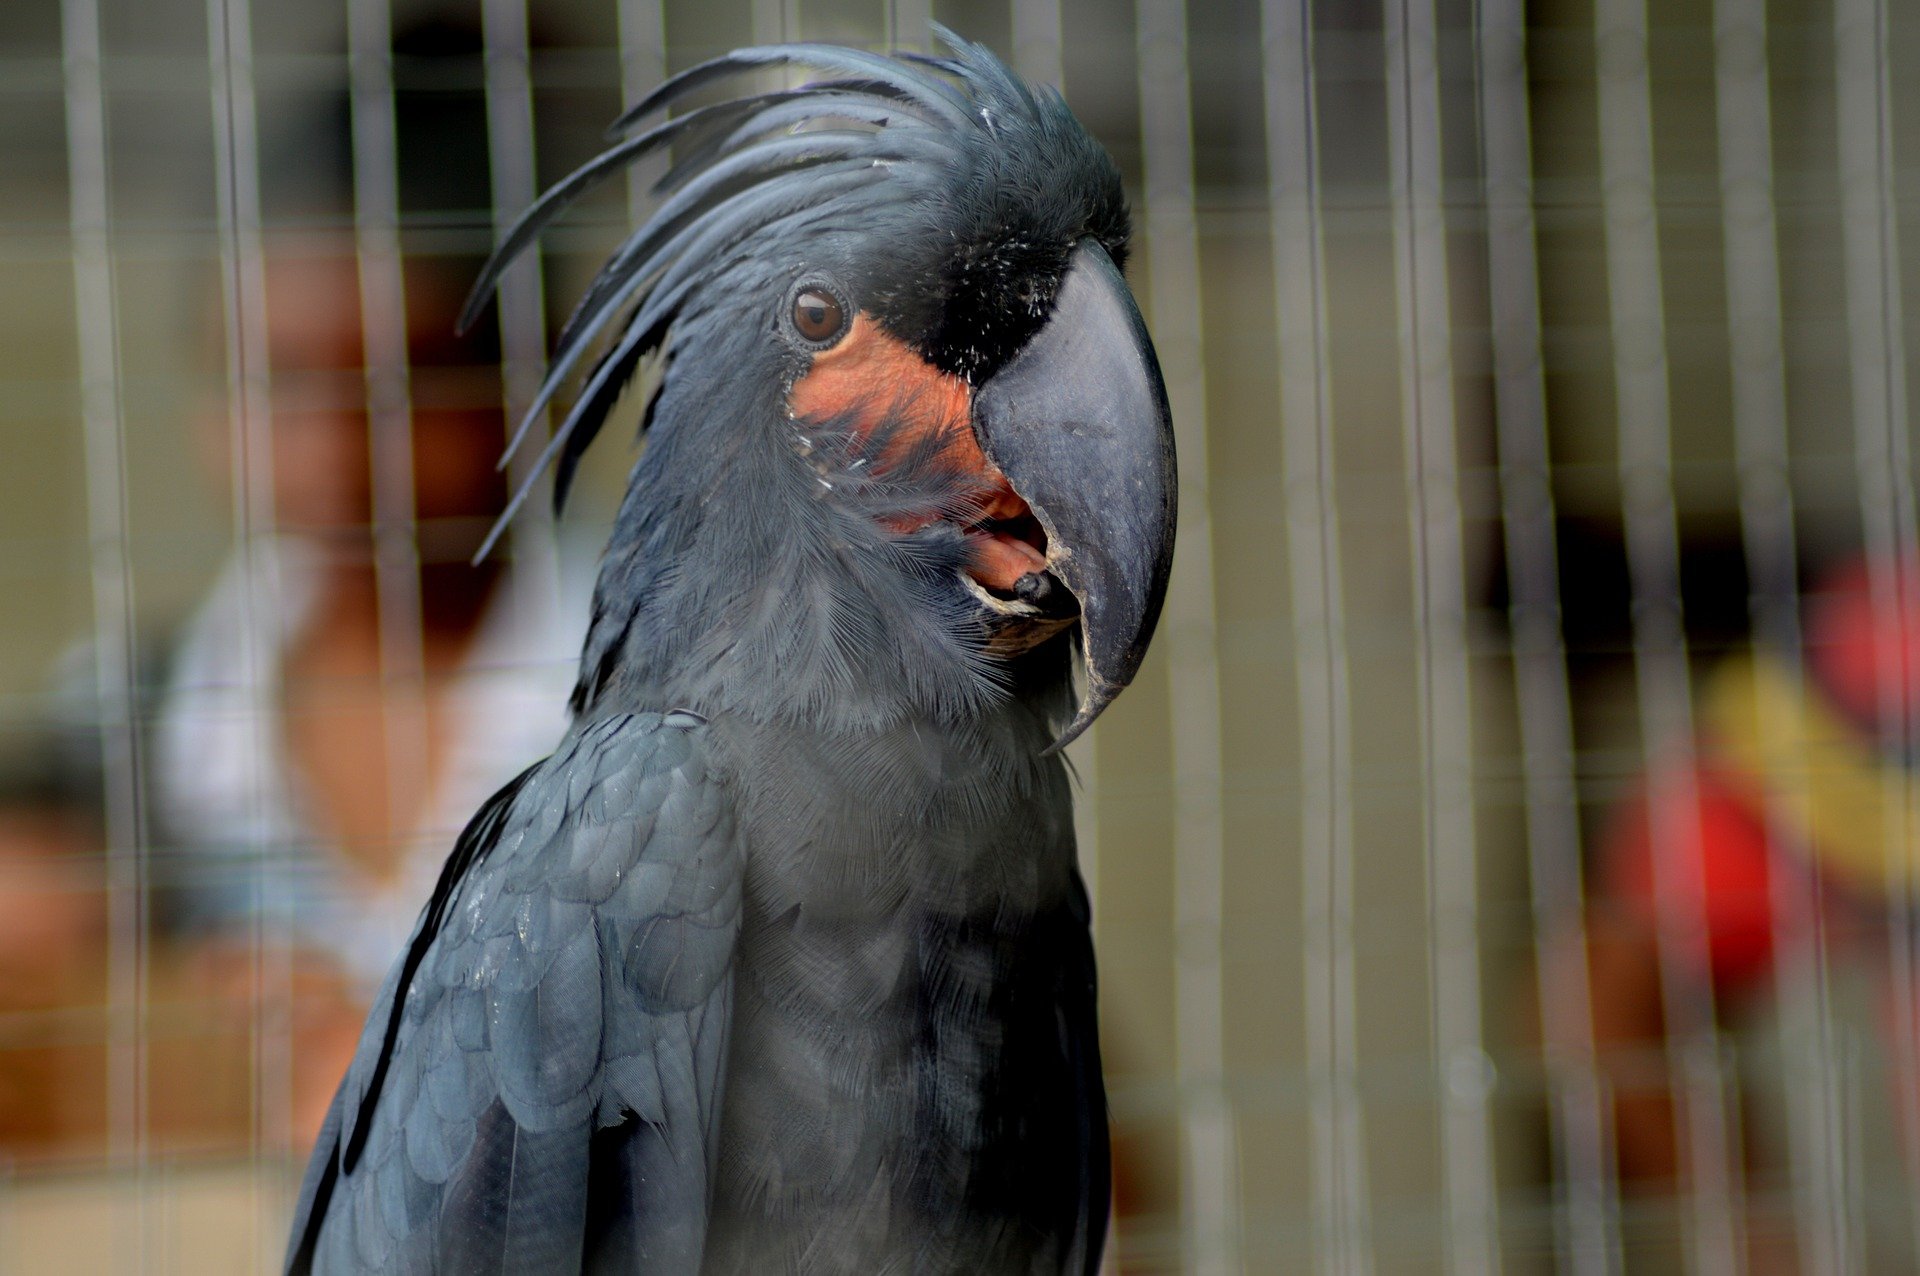 Mød en af de mest eksotiske fuglearter: Dracula-papegøjen